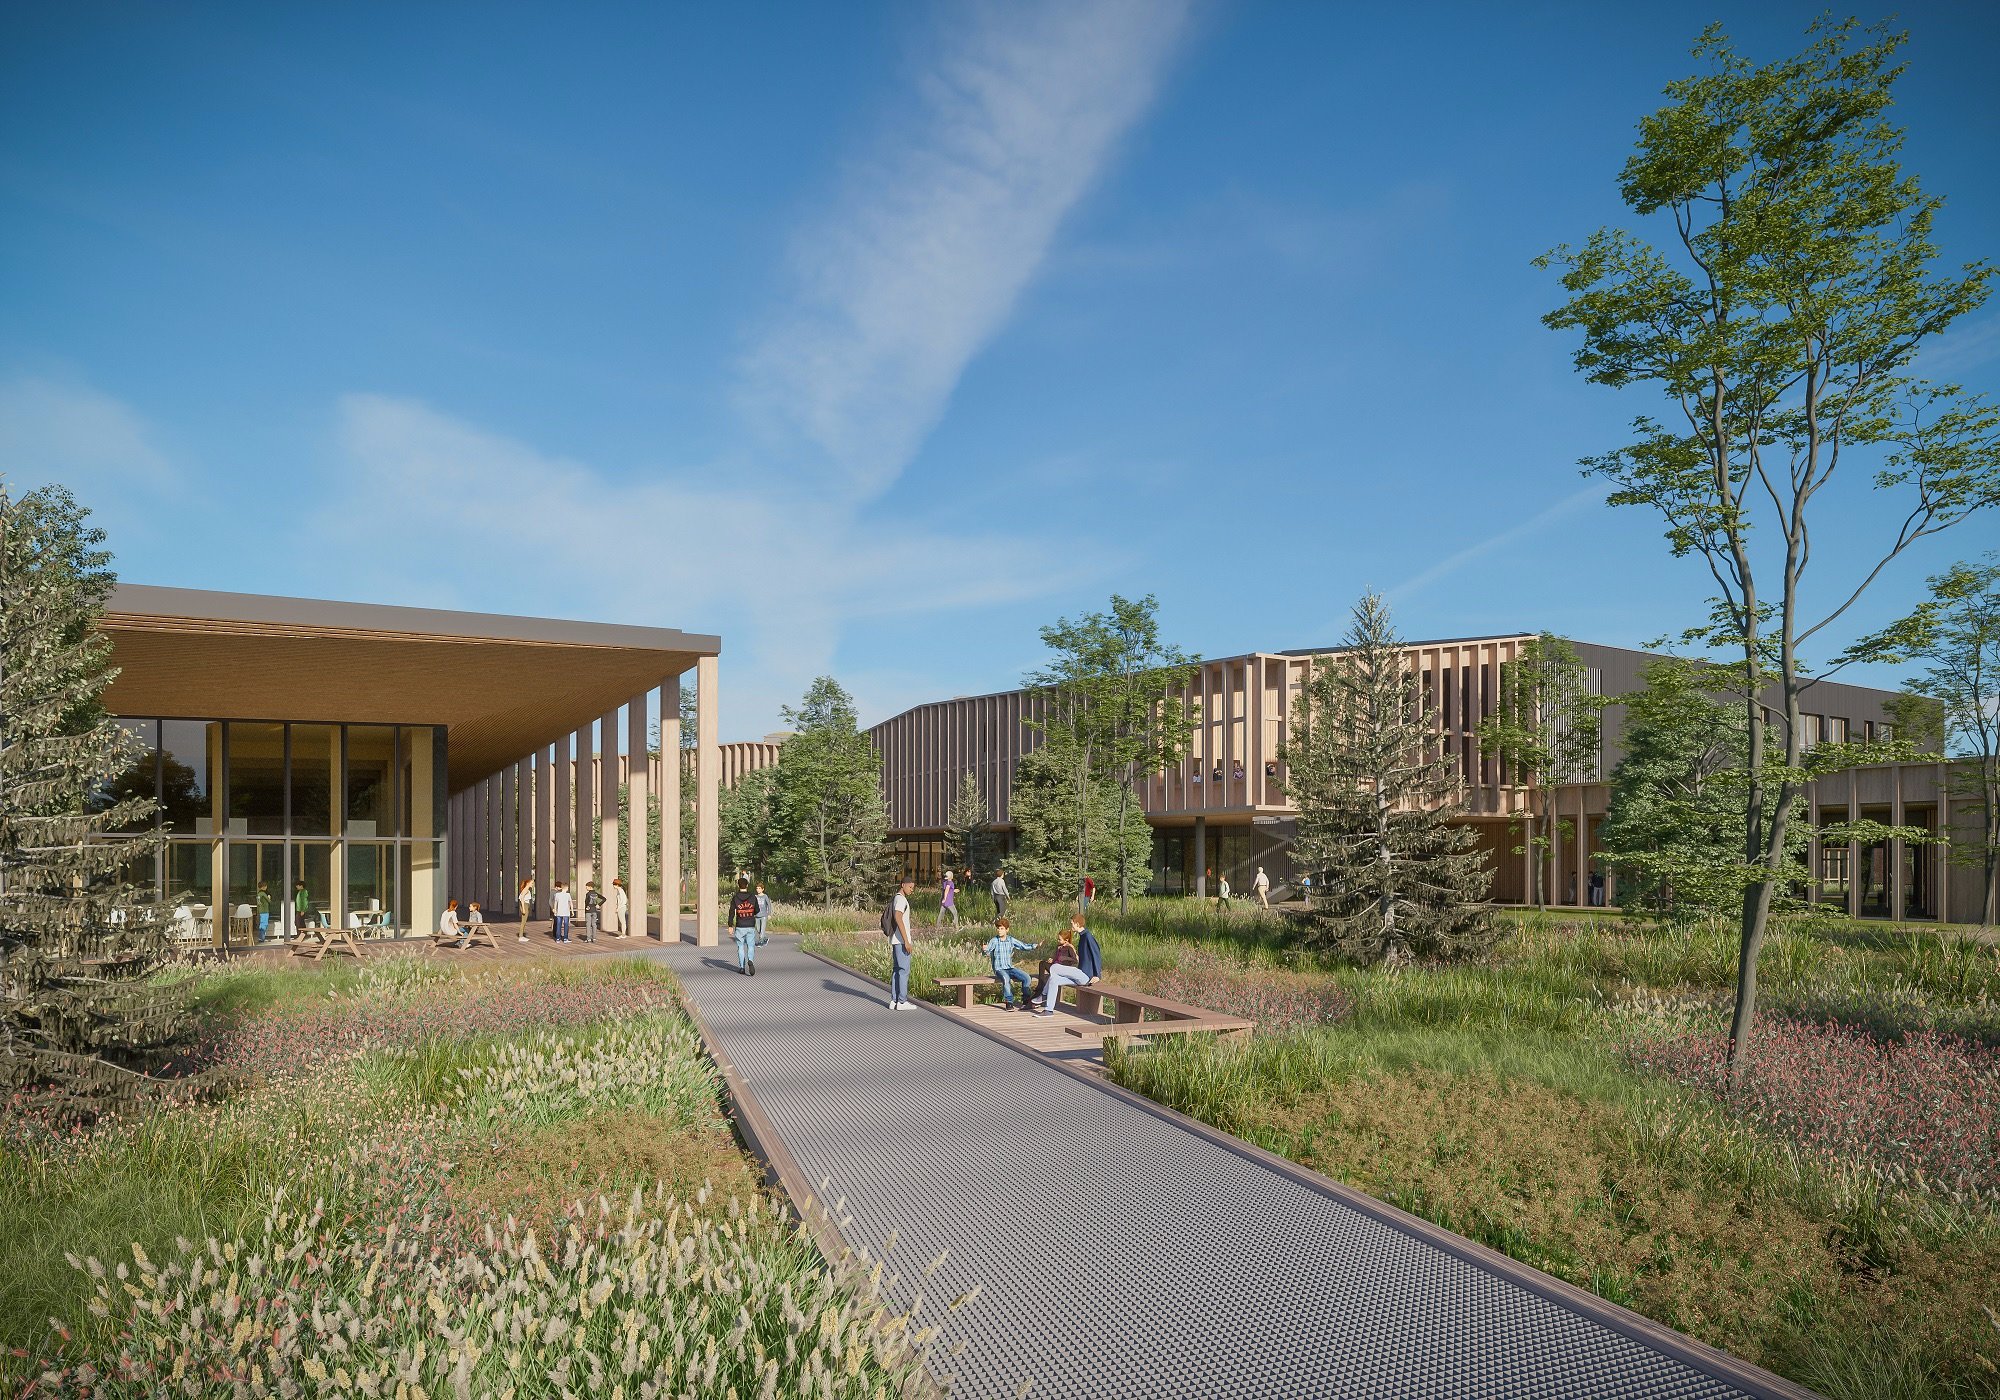 Le futur lycée de Châteauneuf sur Loire va accueillir 1.300 élèves à la rentrée 2026, dans un environnement inclusif et apaisé./Boco Studio/Moon Safari